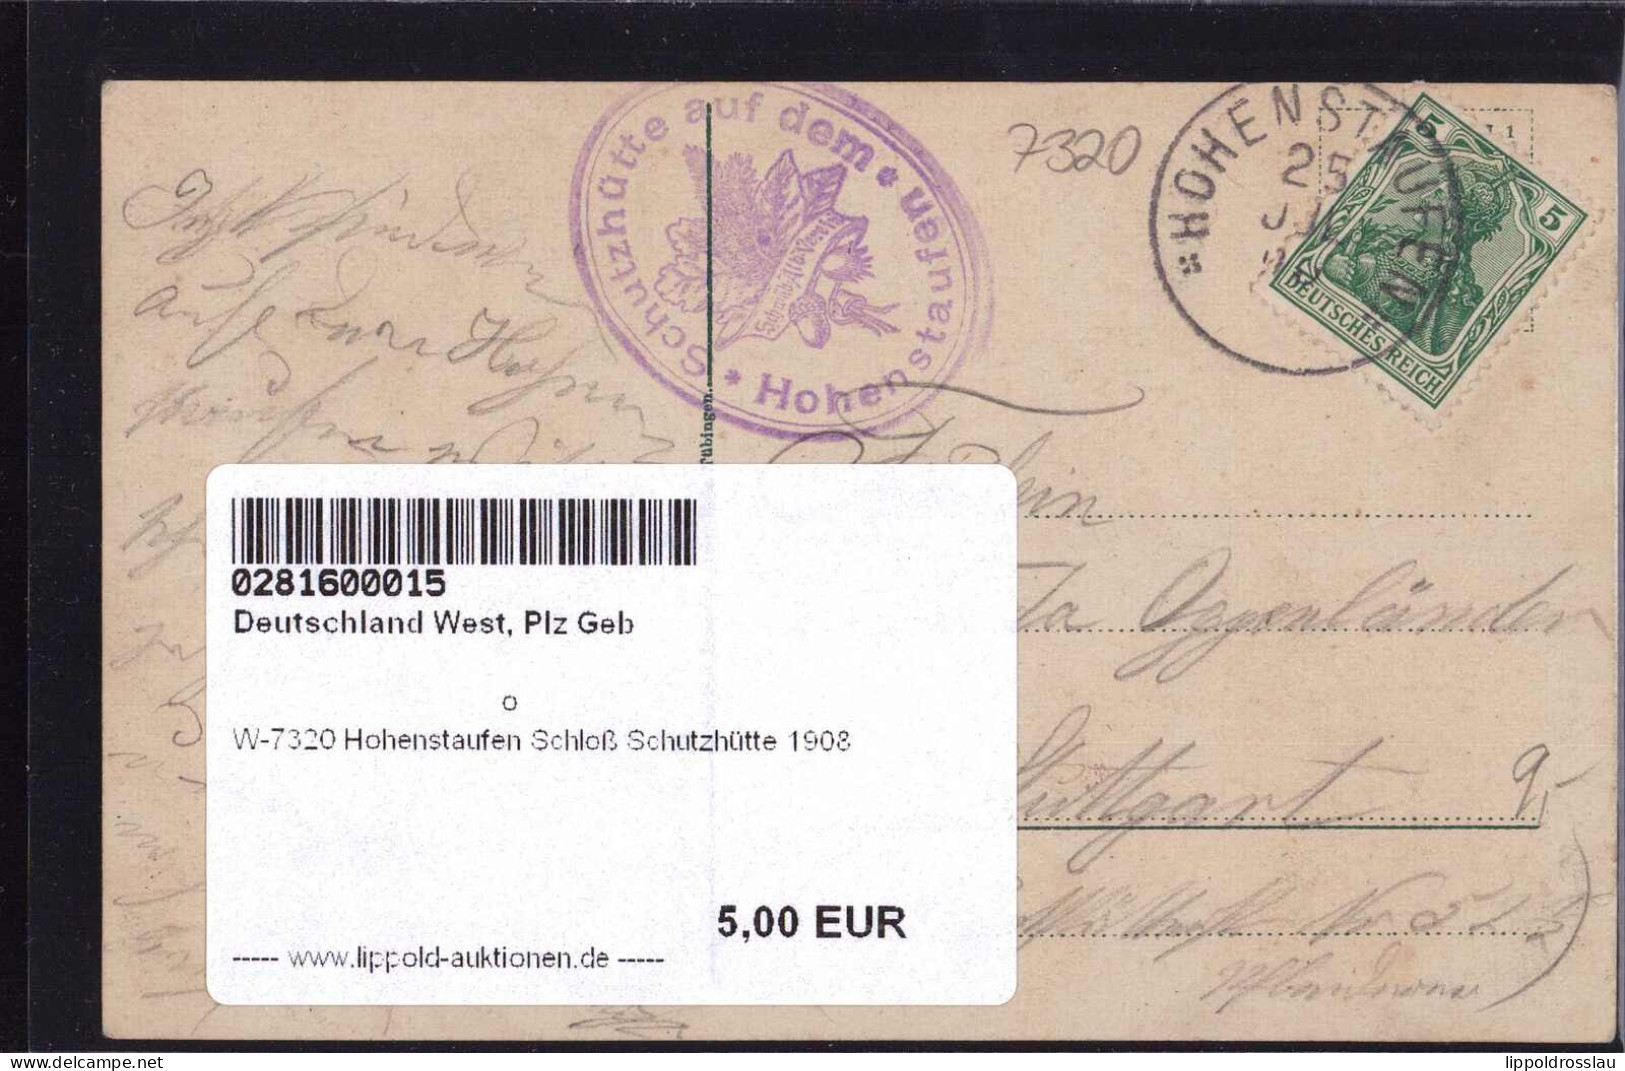 Gest. W-7320 Hohenstaufen Schloß Schutzhütte 1908 - Goeppingen